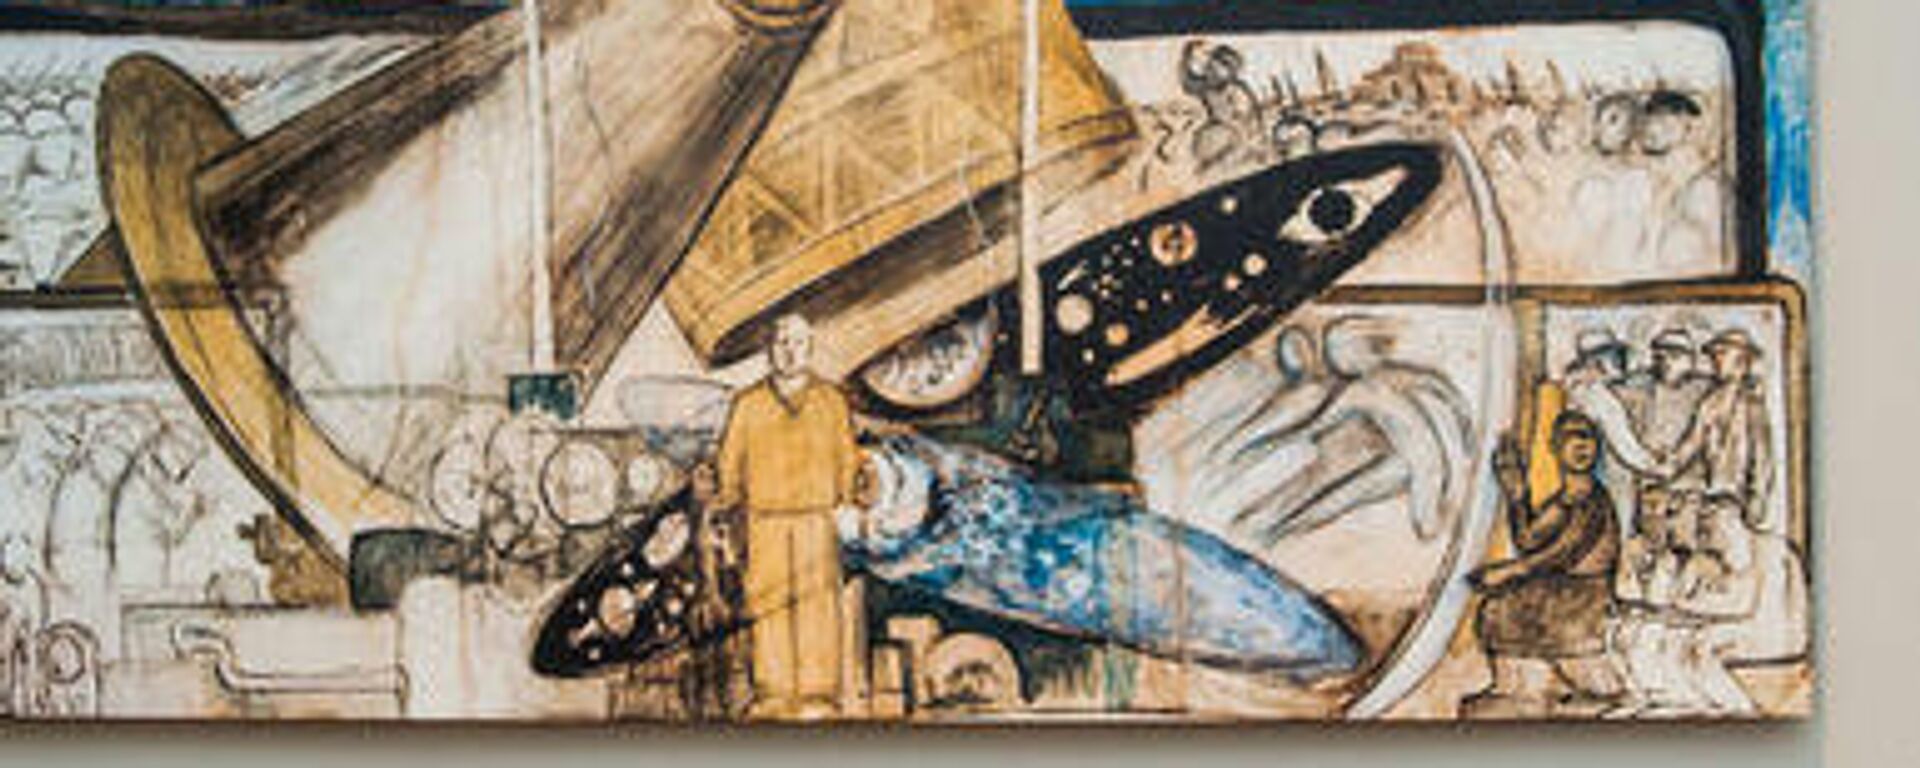 El hombre en la encrucijada, obra realizada por Diego Rivera - Sputnik Mundo, 1920, 08.12.2021